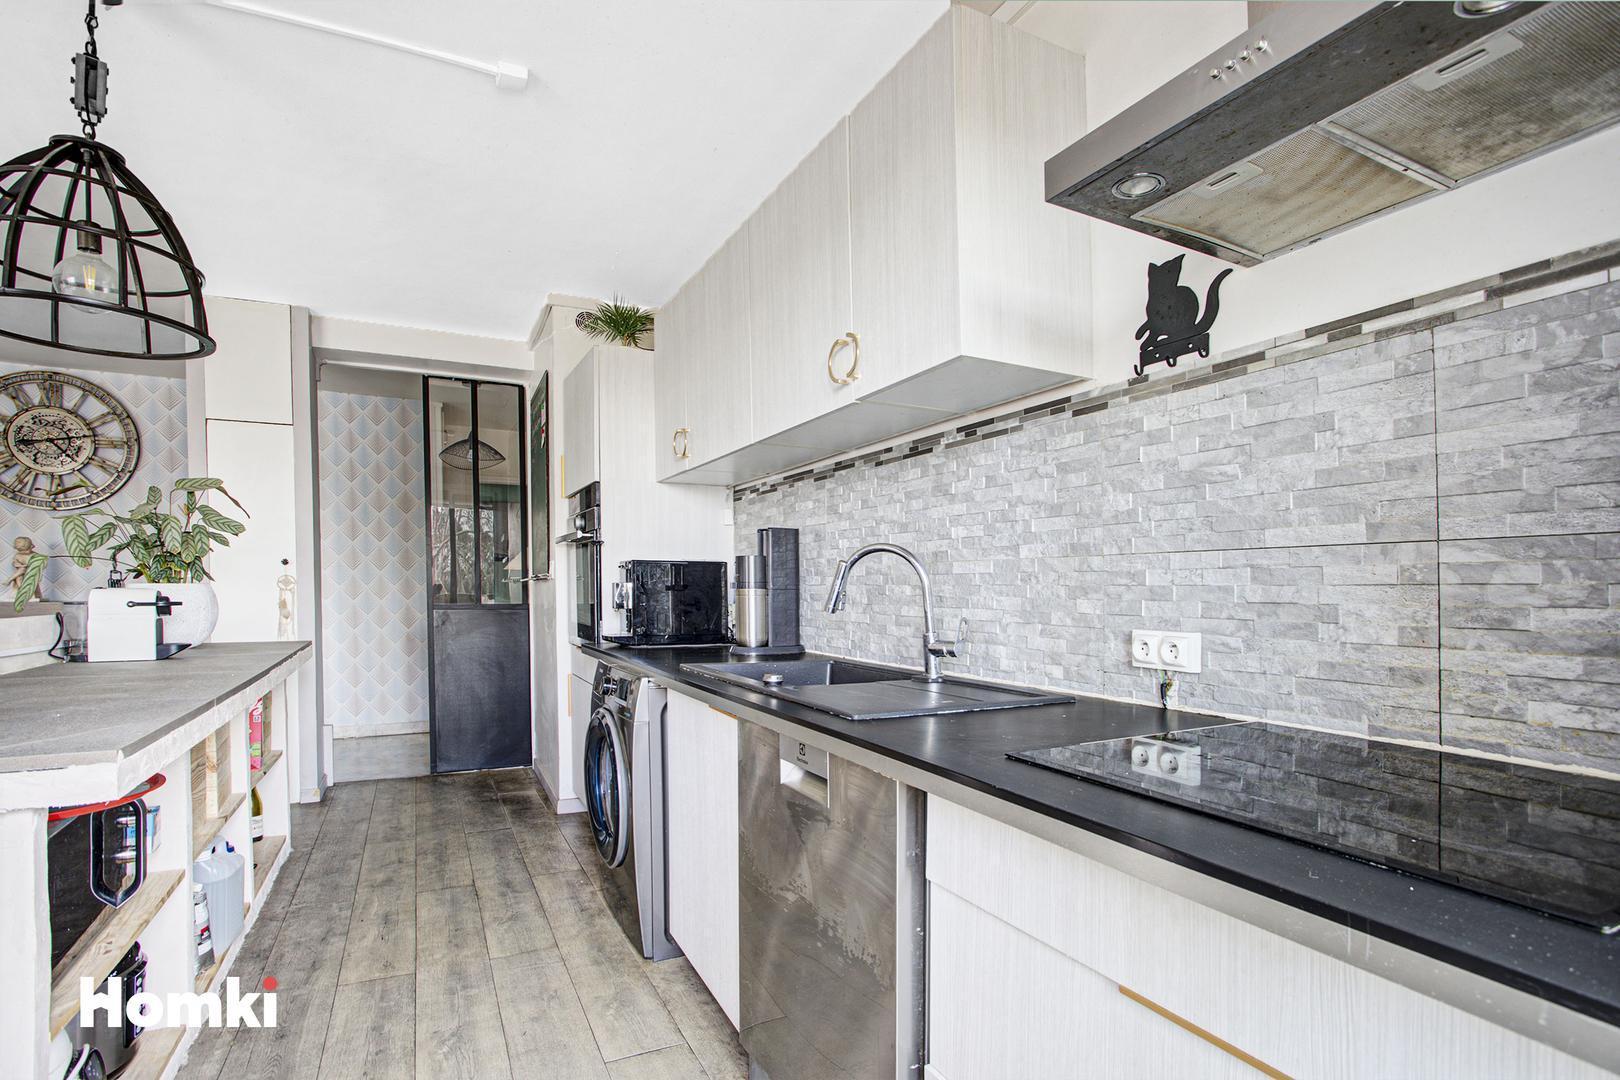 Homki - Vente Appartement  de 77.0 m² à Perpignan 66000